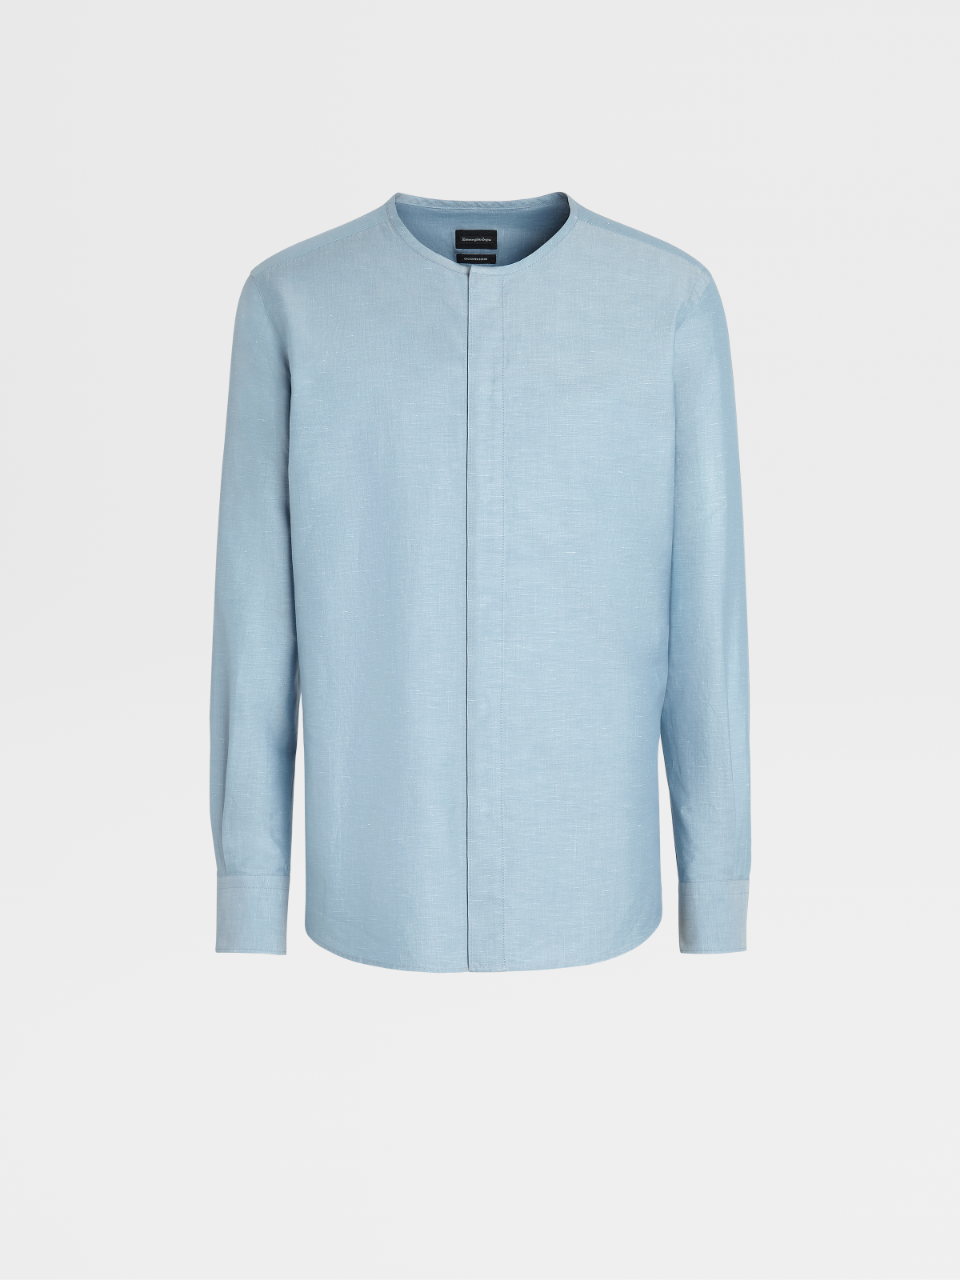 蔚蓝色棉质亚麻及桑蚕丝混纺亨利衫，Milano 合身版型